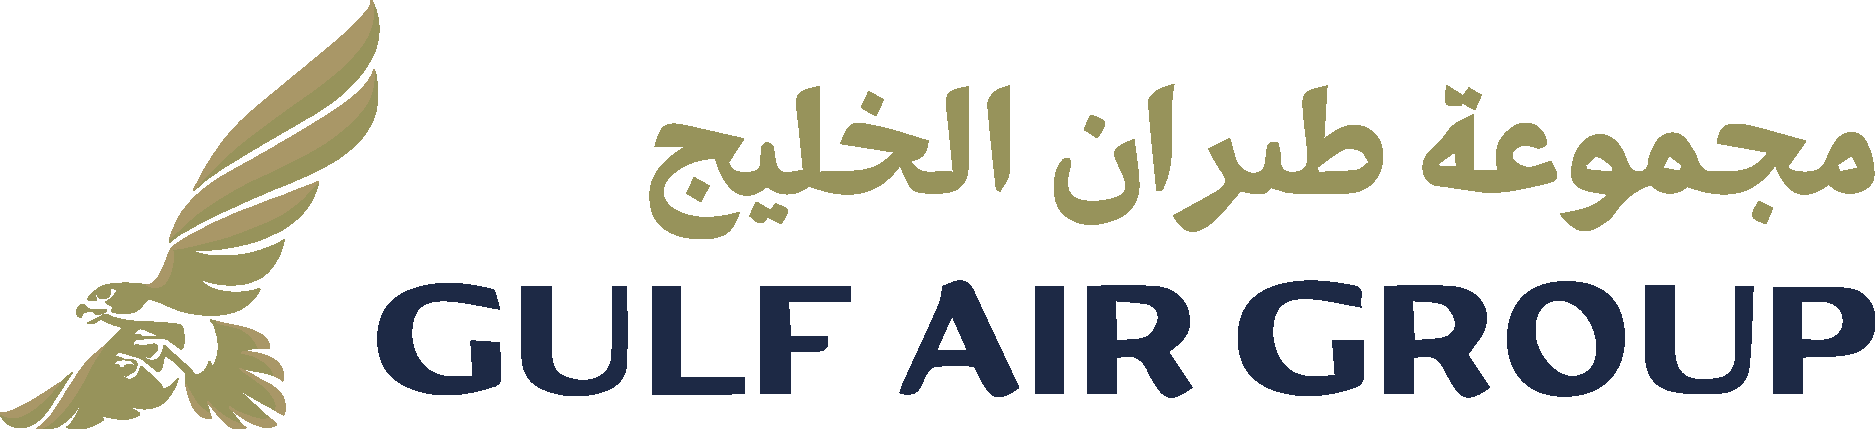 Gulf Air Group Logo Vector